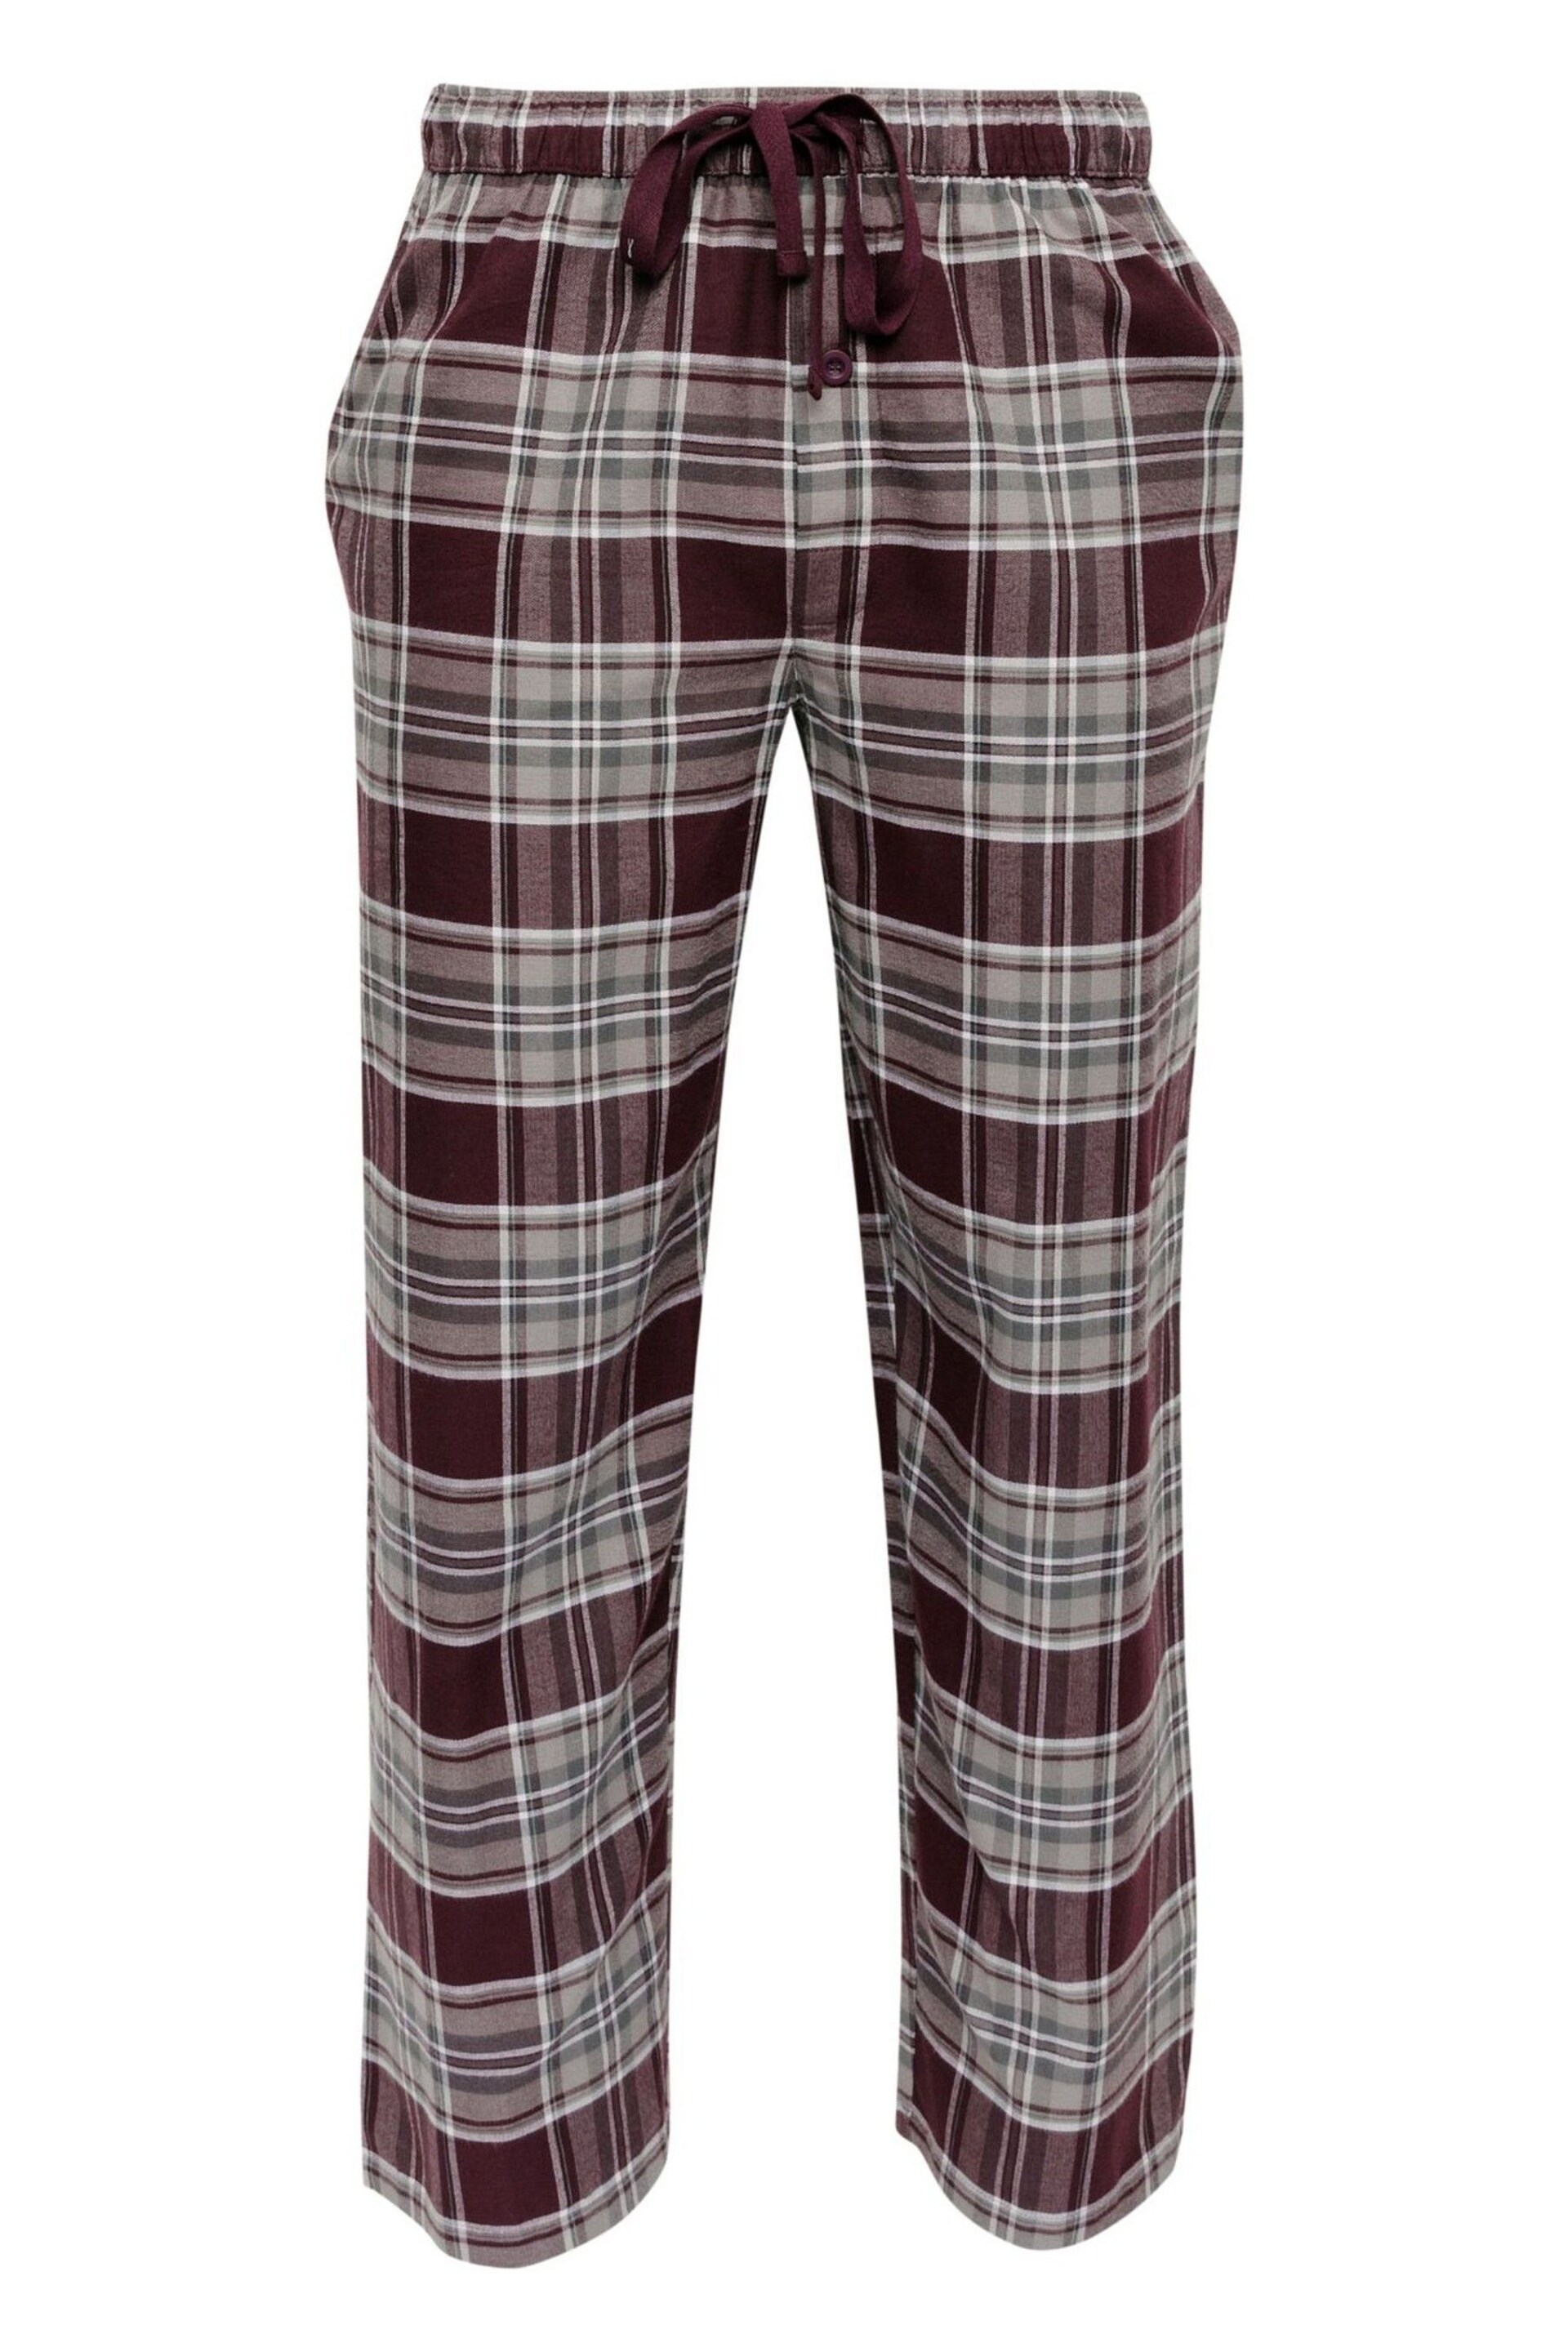 Cyberjammies Purple Check Pyjamas Bottoms - Image 4 of 4